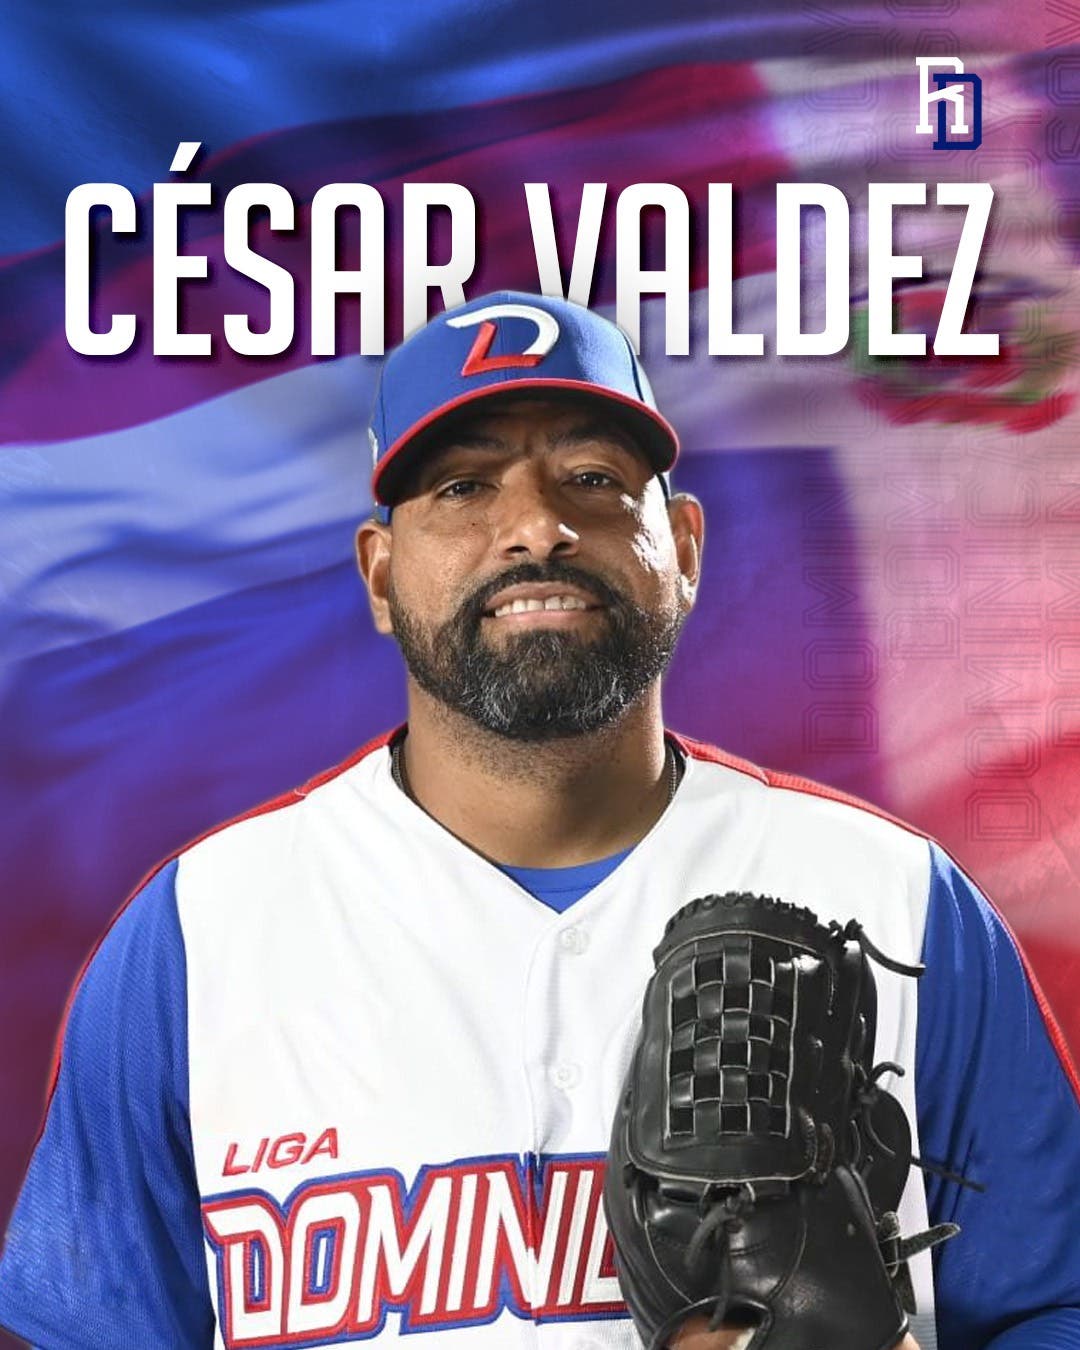 César Valdez se une al equipo dominicano